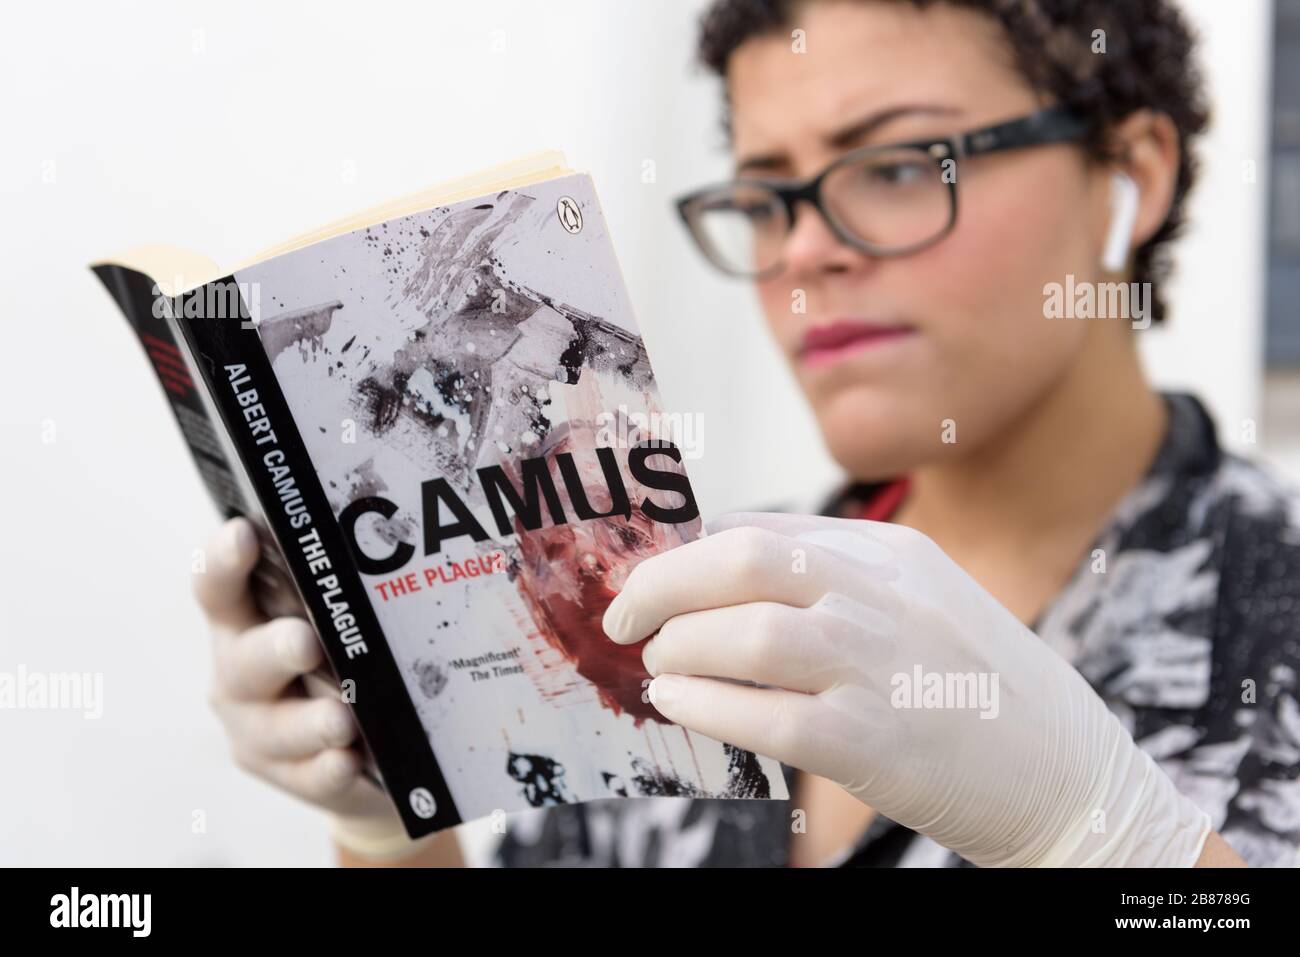 Le roman du philosophe existentiel et absurdiste Albert Camus, la peste, connaît une renaissance dans la pandémie mondiale de Coronavirus de 2020 Banque D'Images